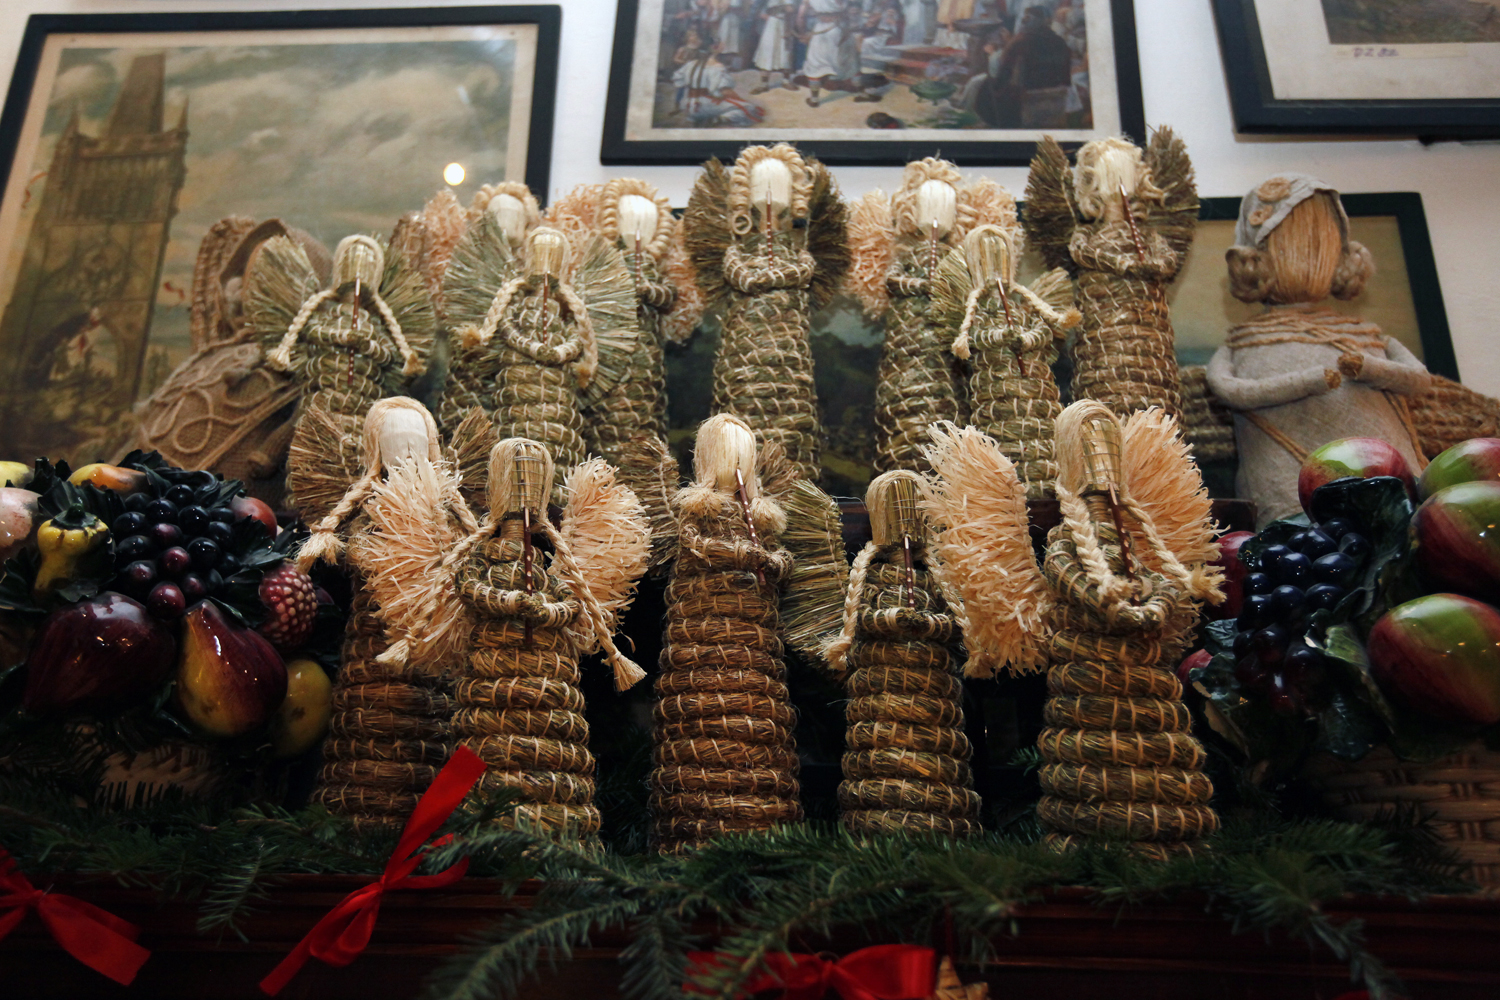 Letošním hlavním tématem výstavy jsou české vánoční zvyky